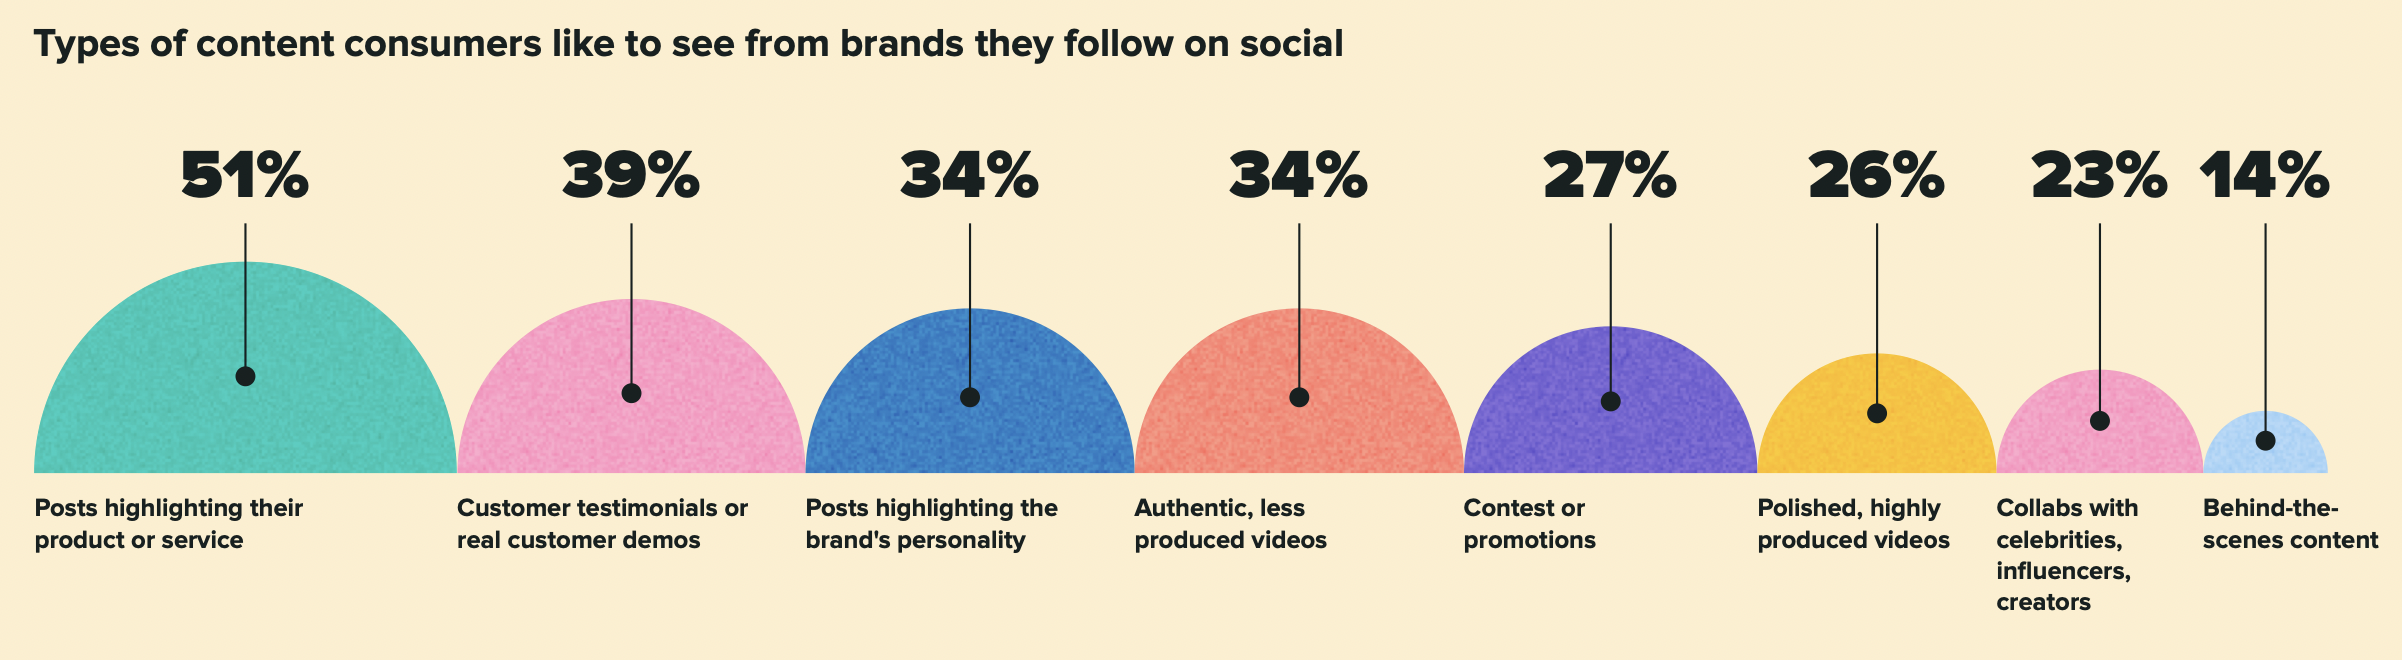 نموداری که انواع مختلف محتوایی را که مصرف کنندگان می خواهند از برندها در شبکه های اجتماعی ببینند را نشان می دهد